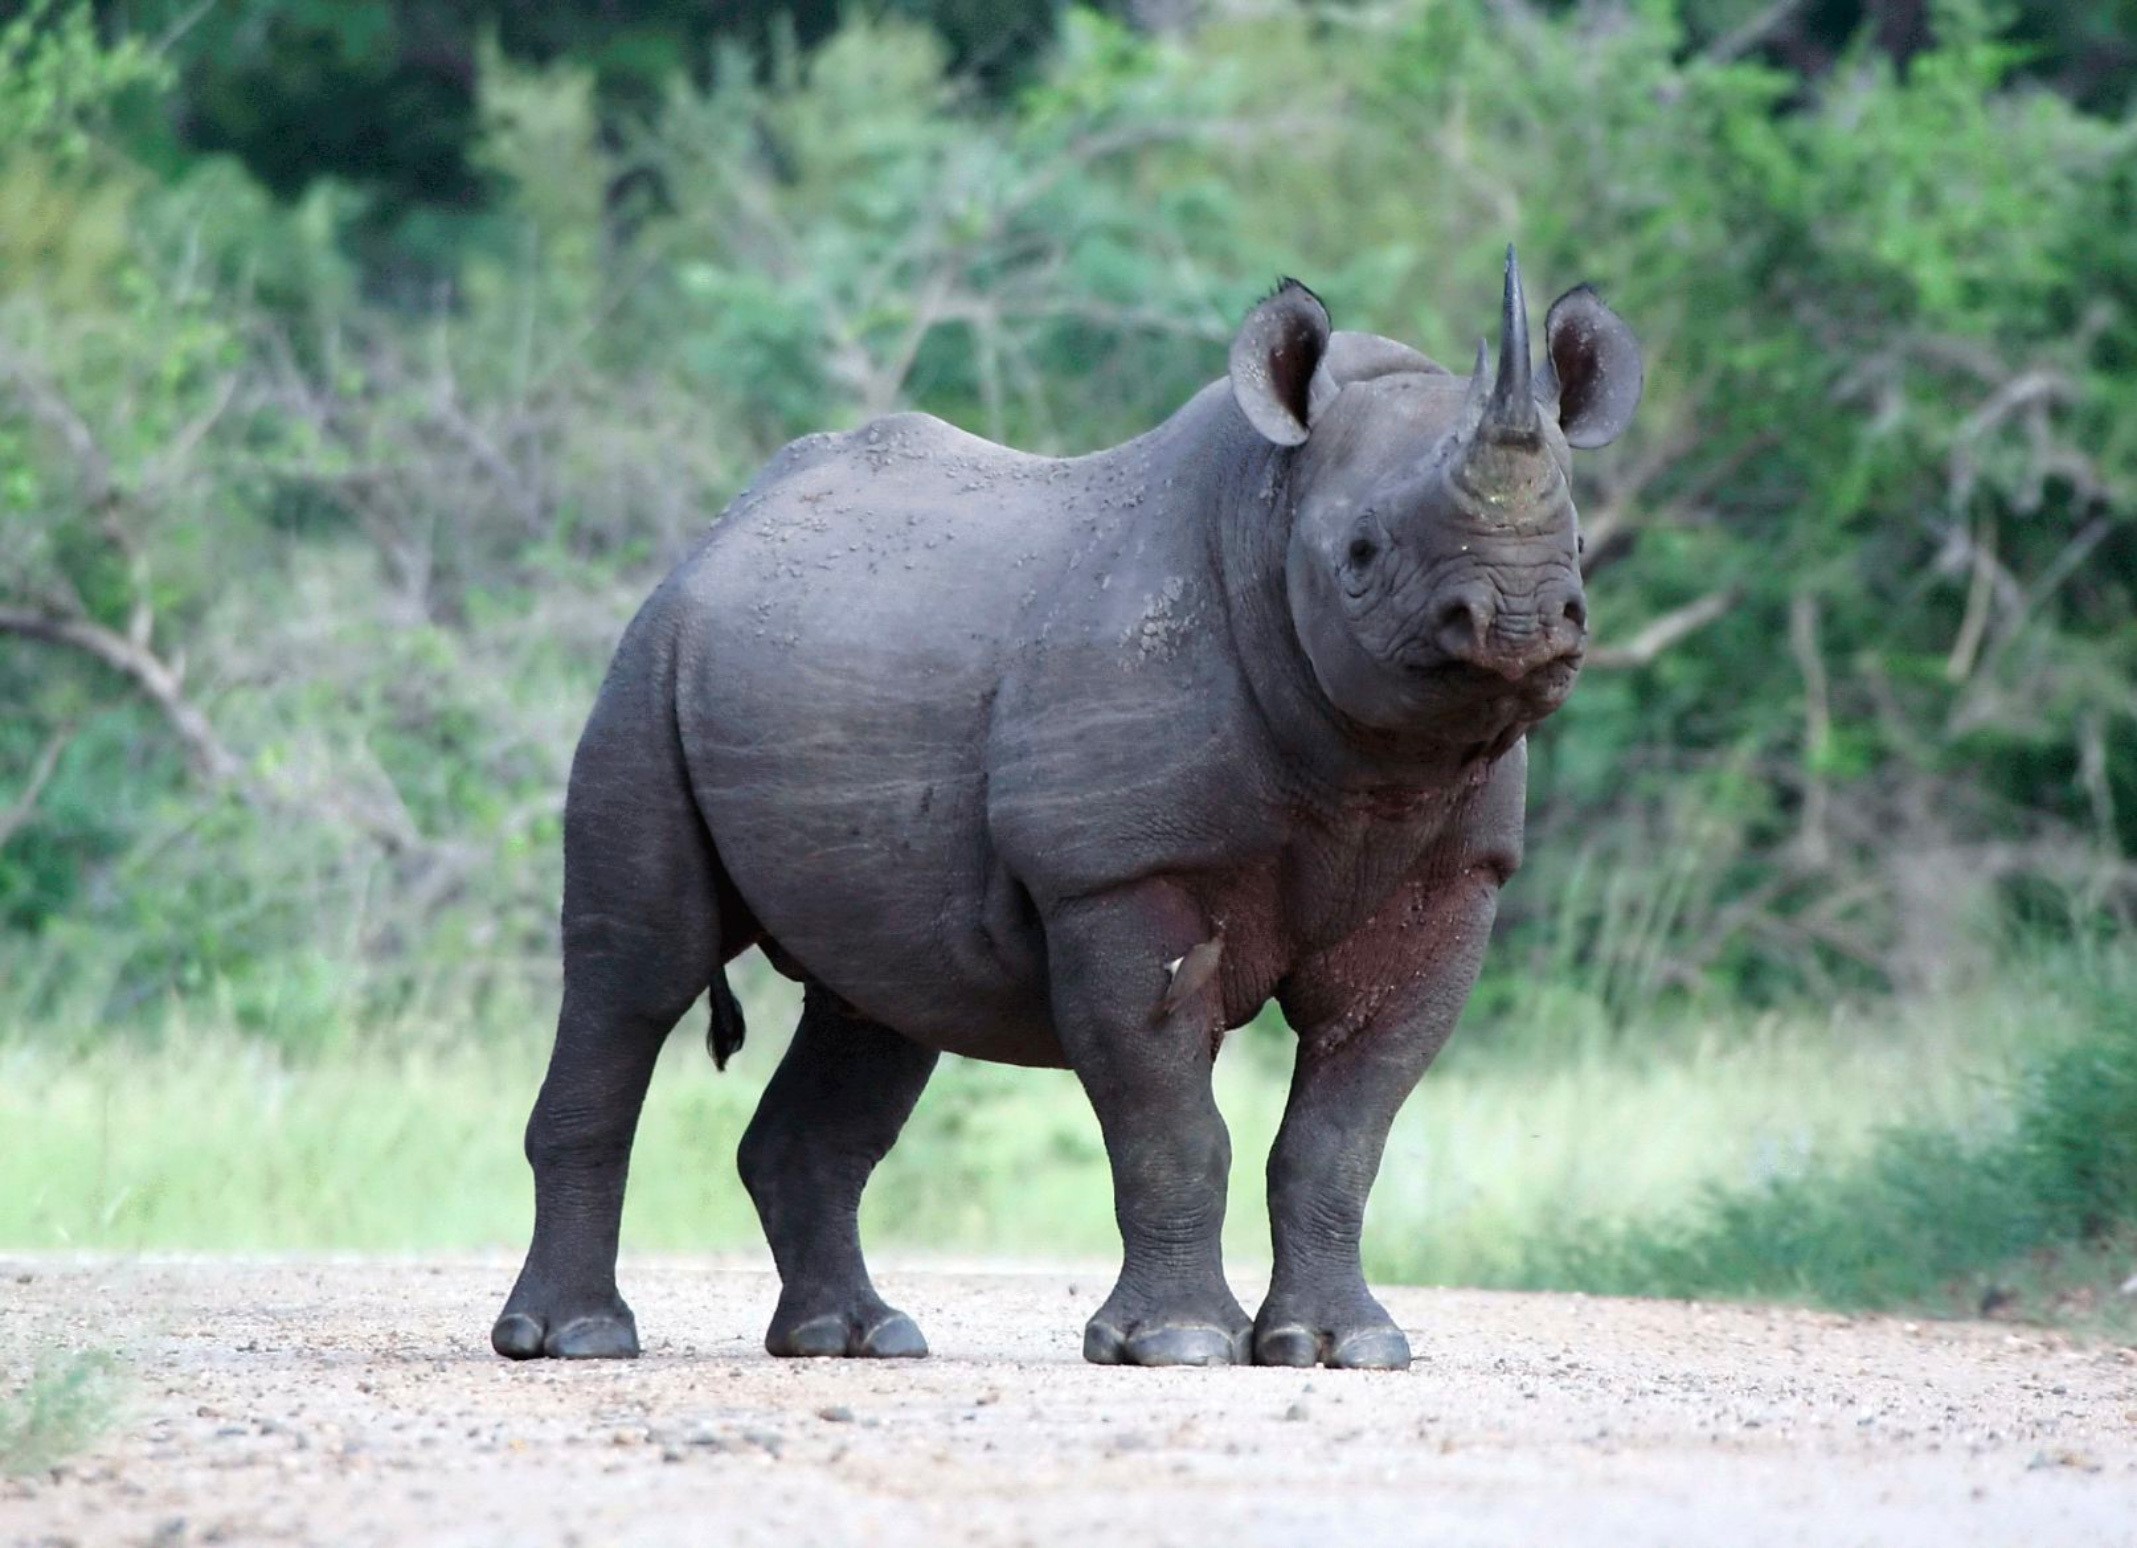 javan rhino